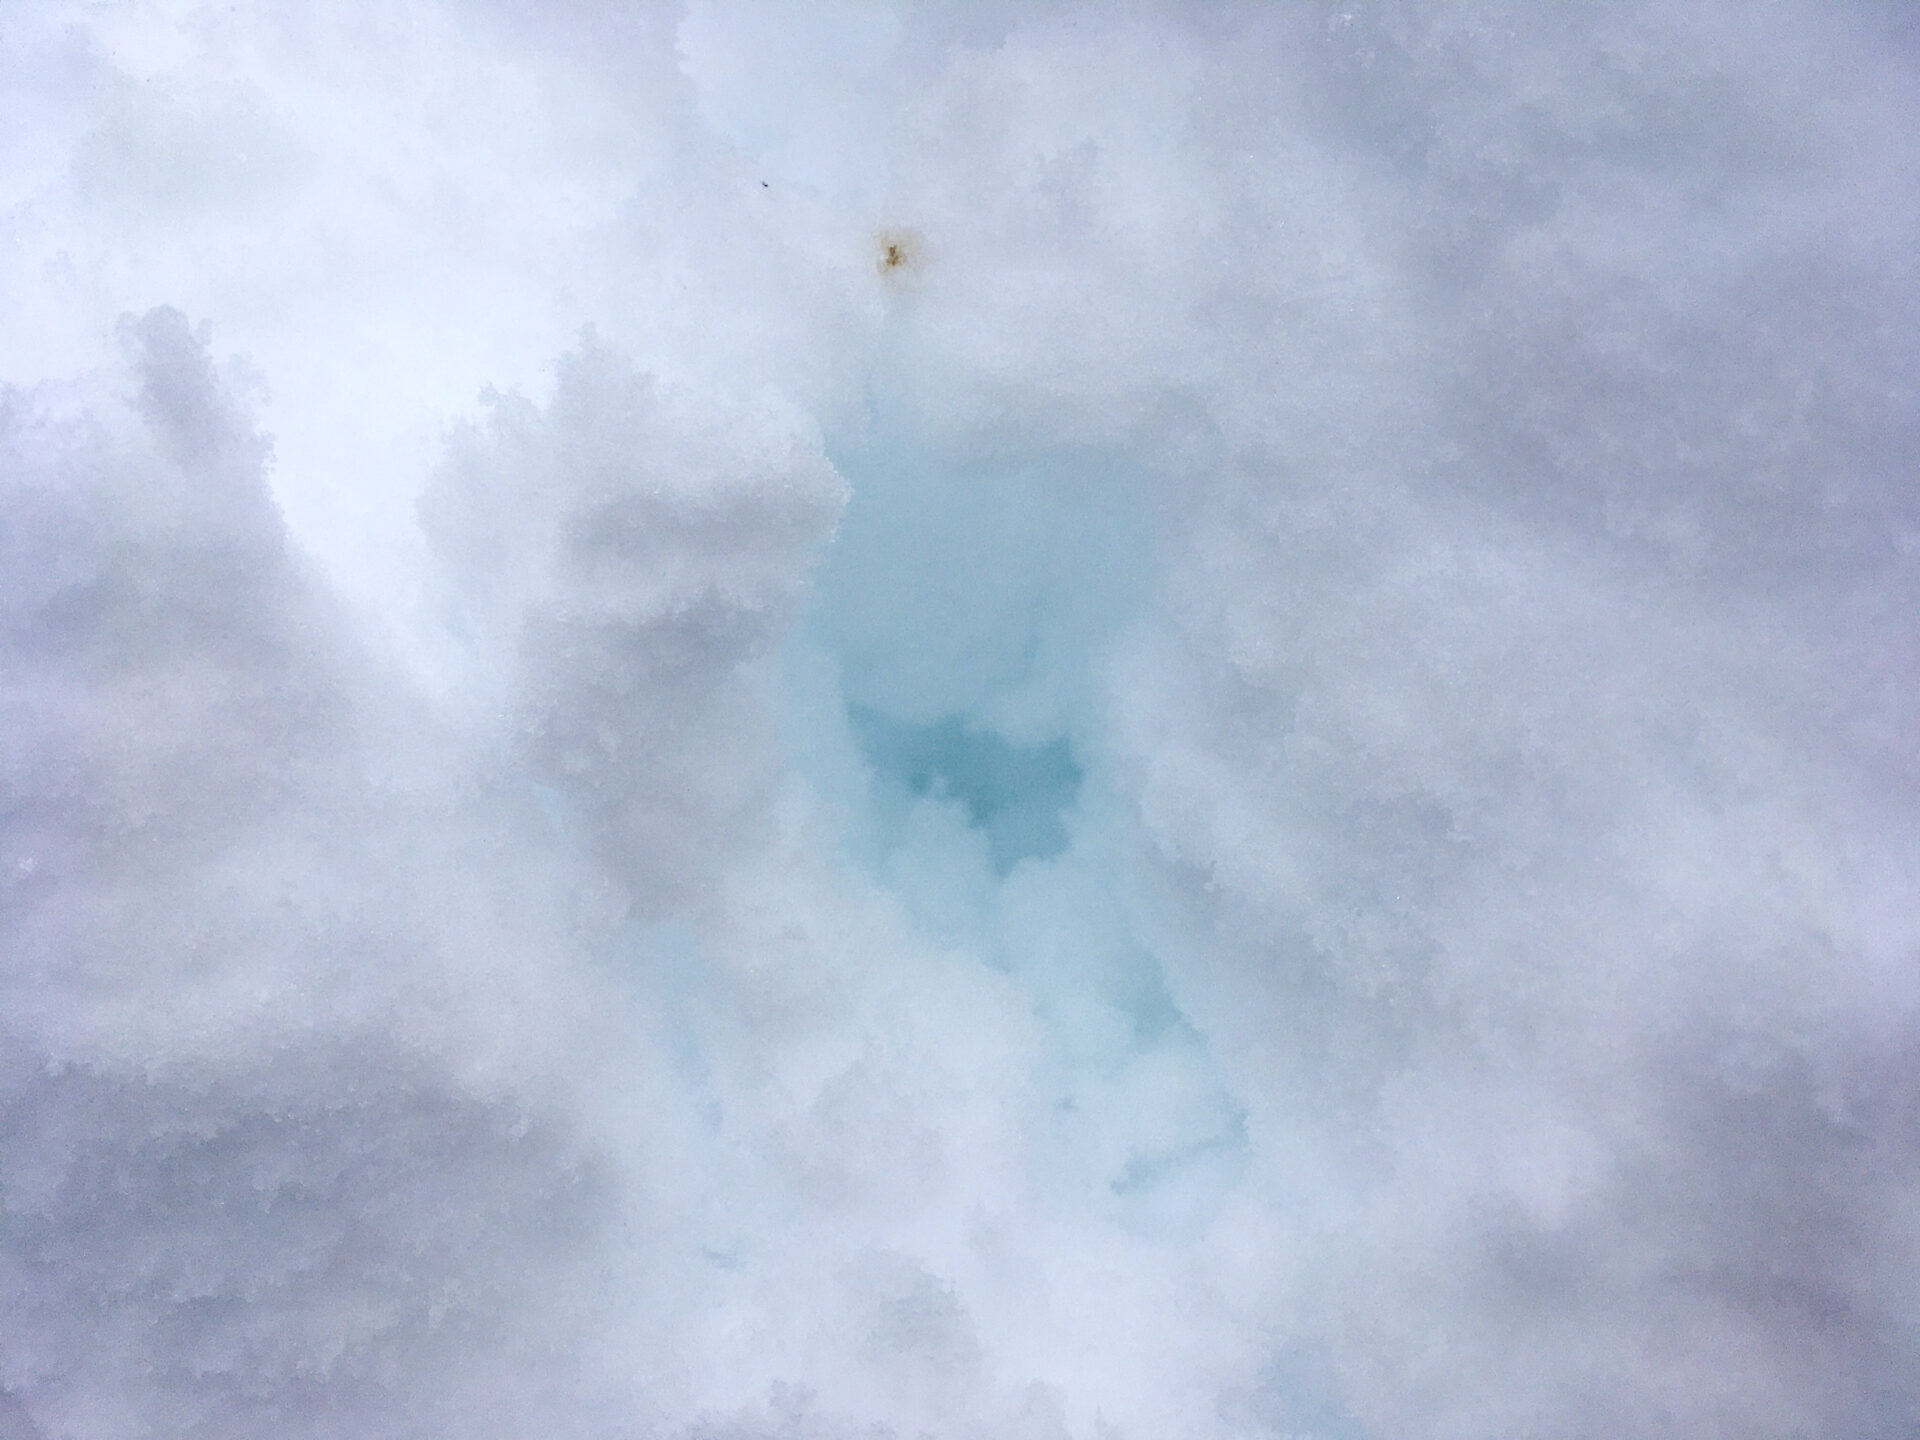 軽井沢の青い雪